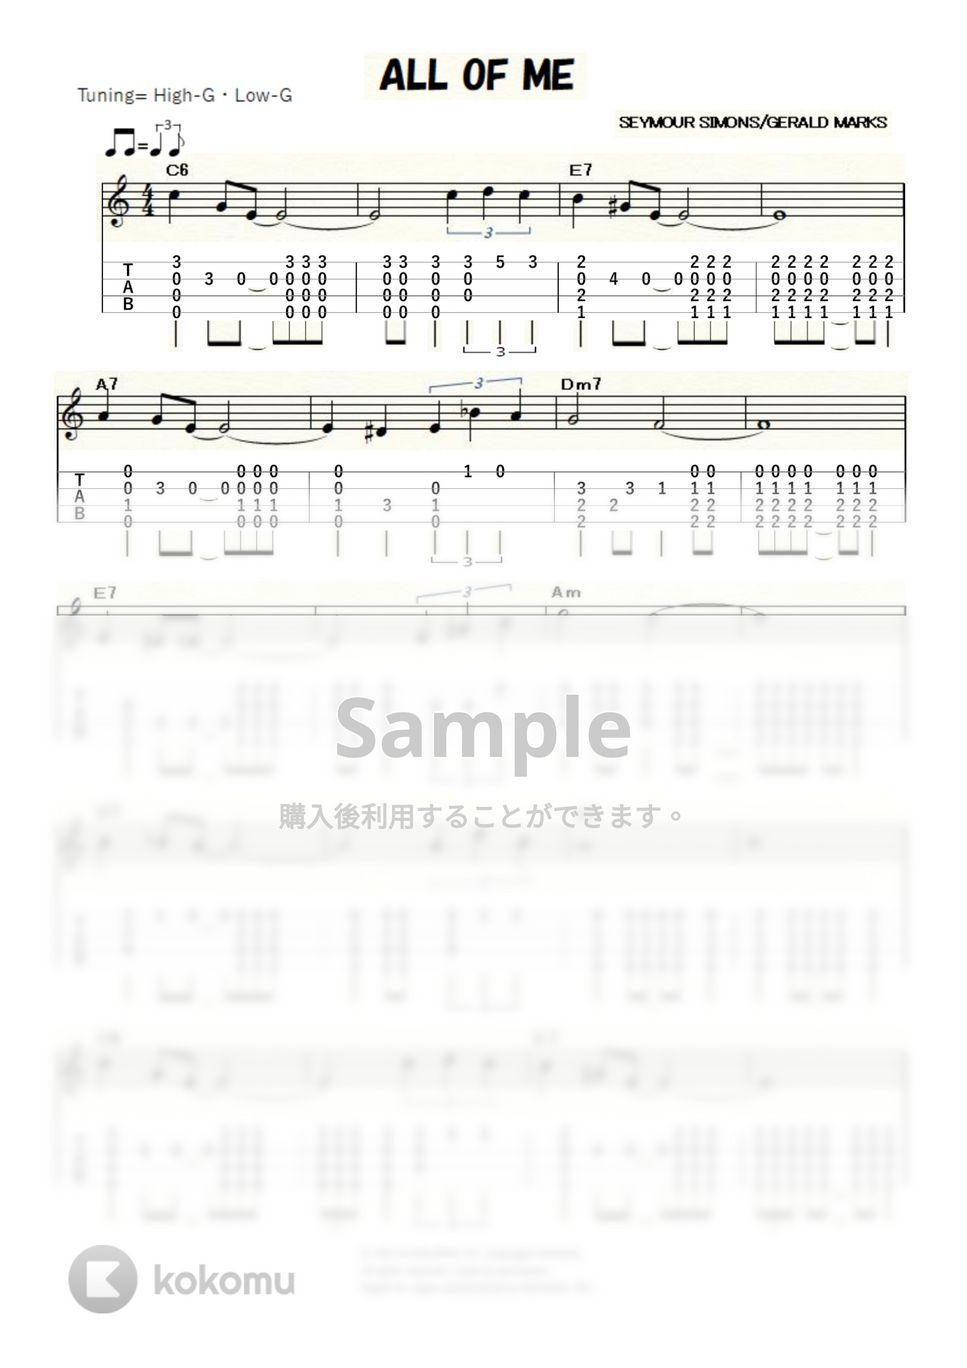 ルイ・アームストロング - ALL OF ME (ｳｸﾚﾚｿﾛ / High-G・Low-G / 中級) by ukulelepapa